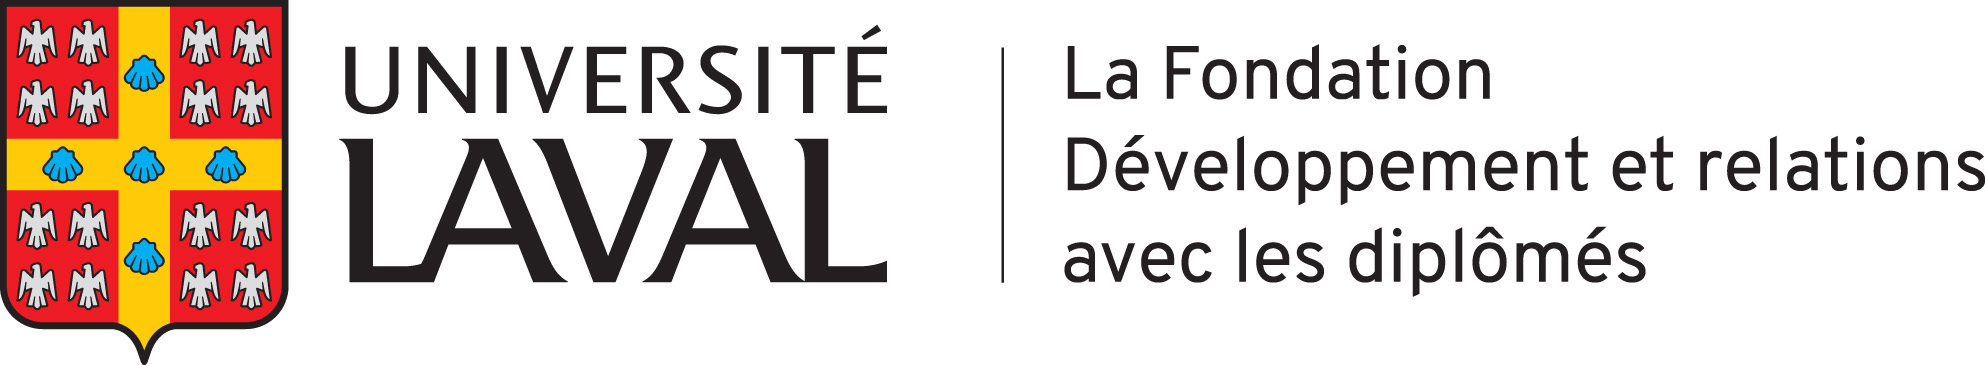 Logo La Fondation de l'Université Laval Développement et relations avec les diplômés